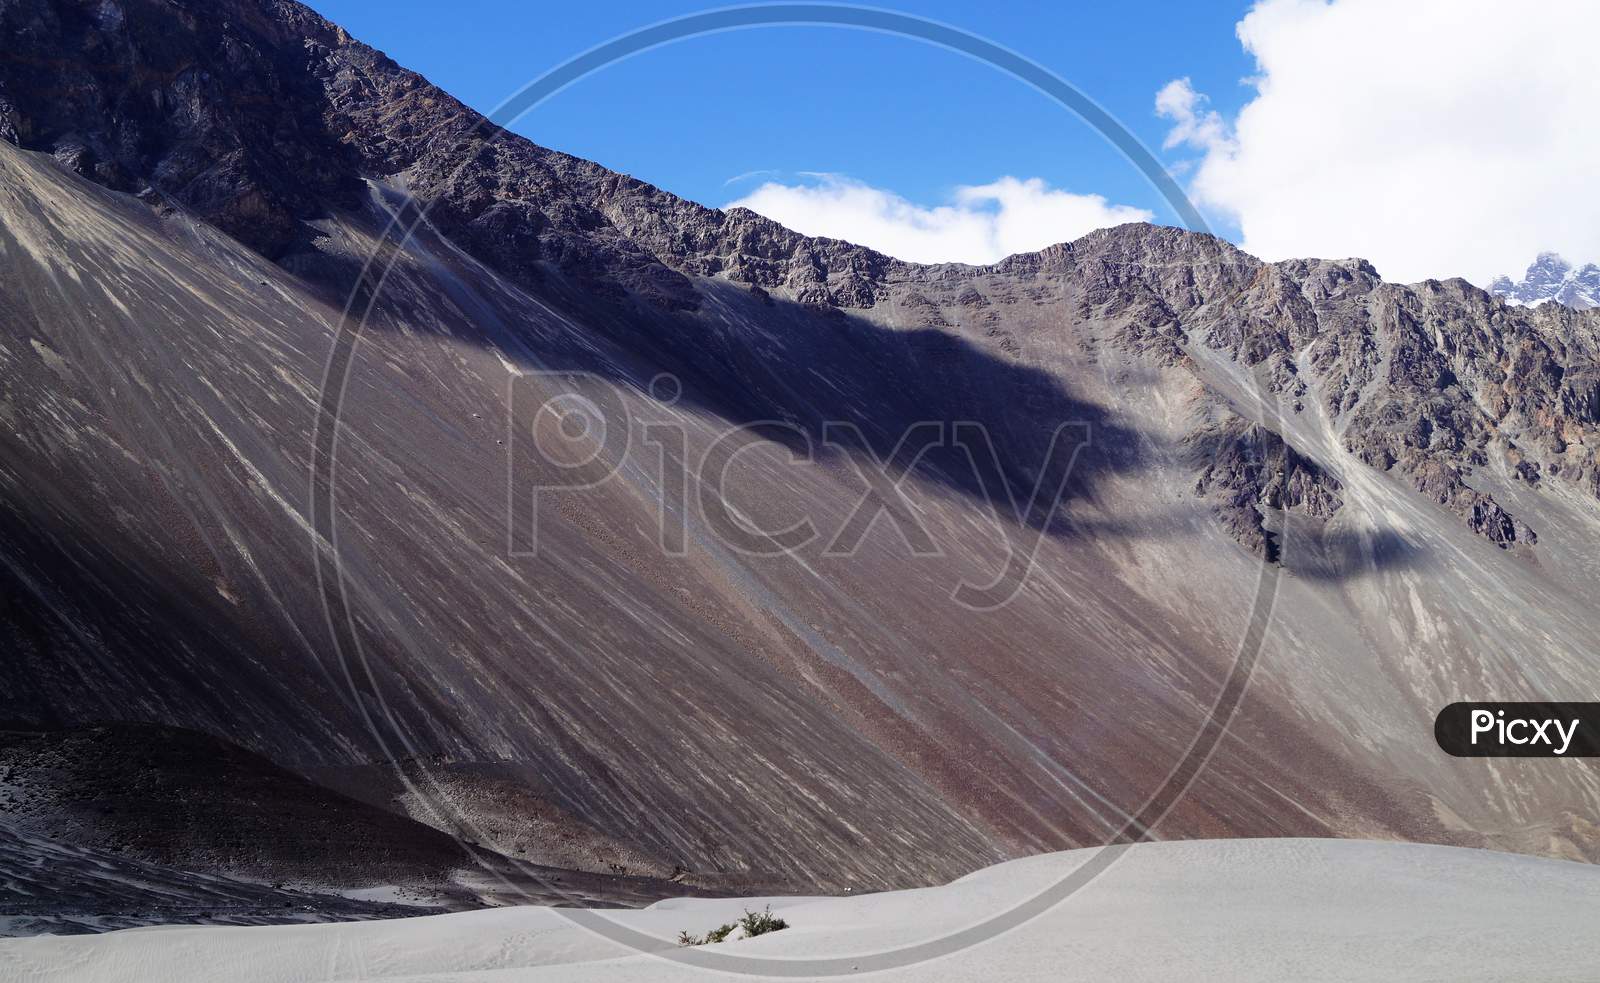 The Amazing Ladakh, Beautiful View of Ladakh